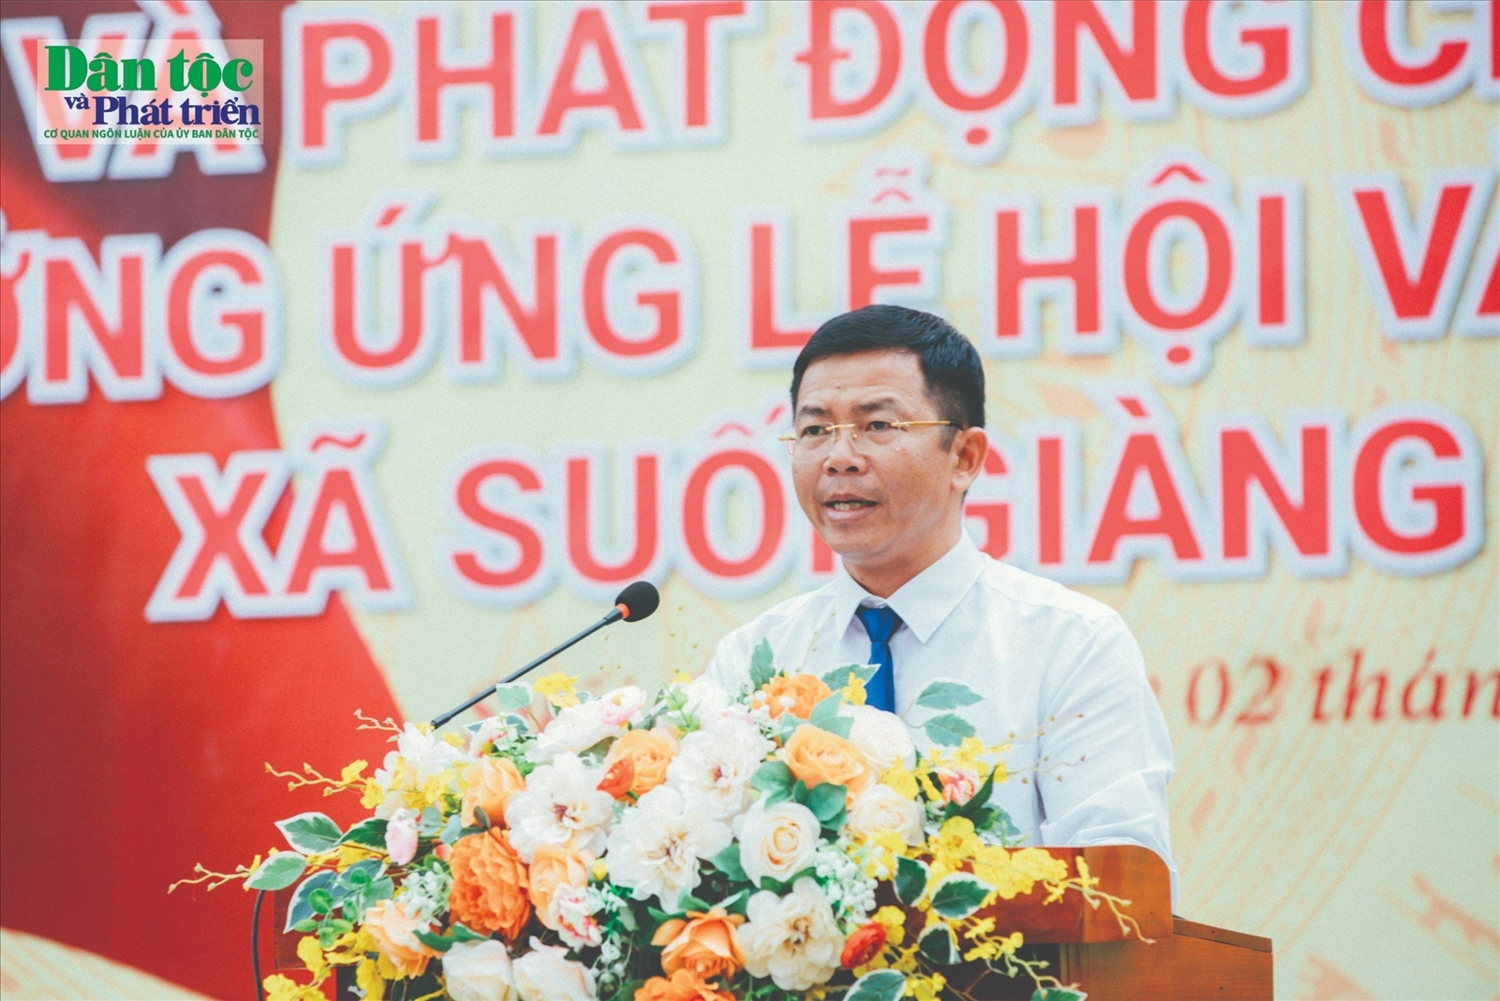 Chủ tịch UBND xã Suối Giàng Lường Văn Tâm phát biểu Kỷ niệm 78 năm quốc khánh 2/9 và phát động chạy Việt dã